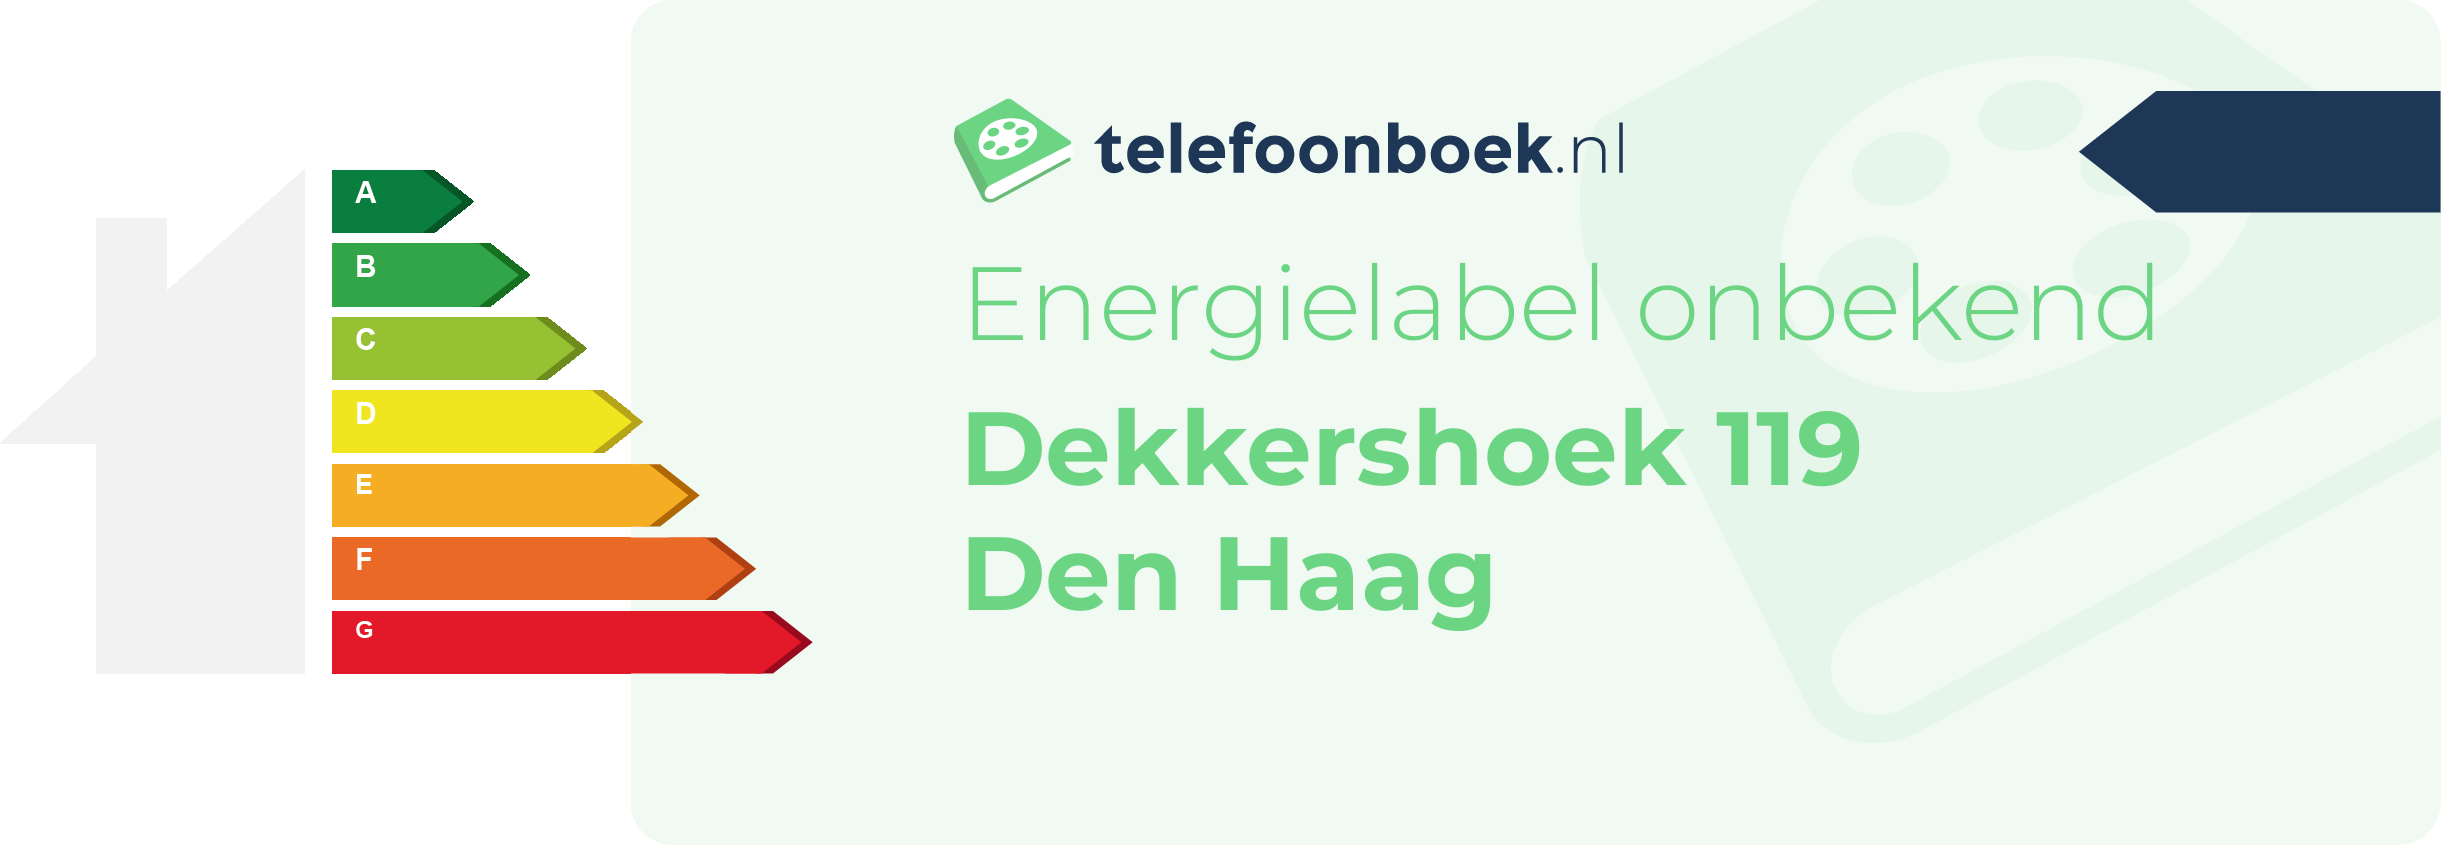 Energielabel Dekkershoek 119 Den Haag